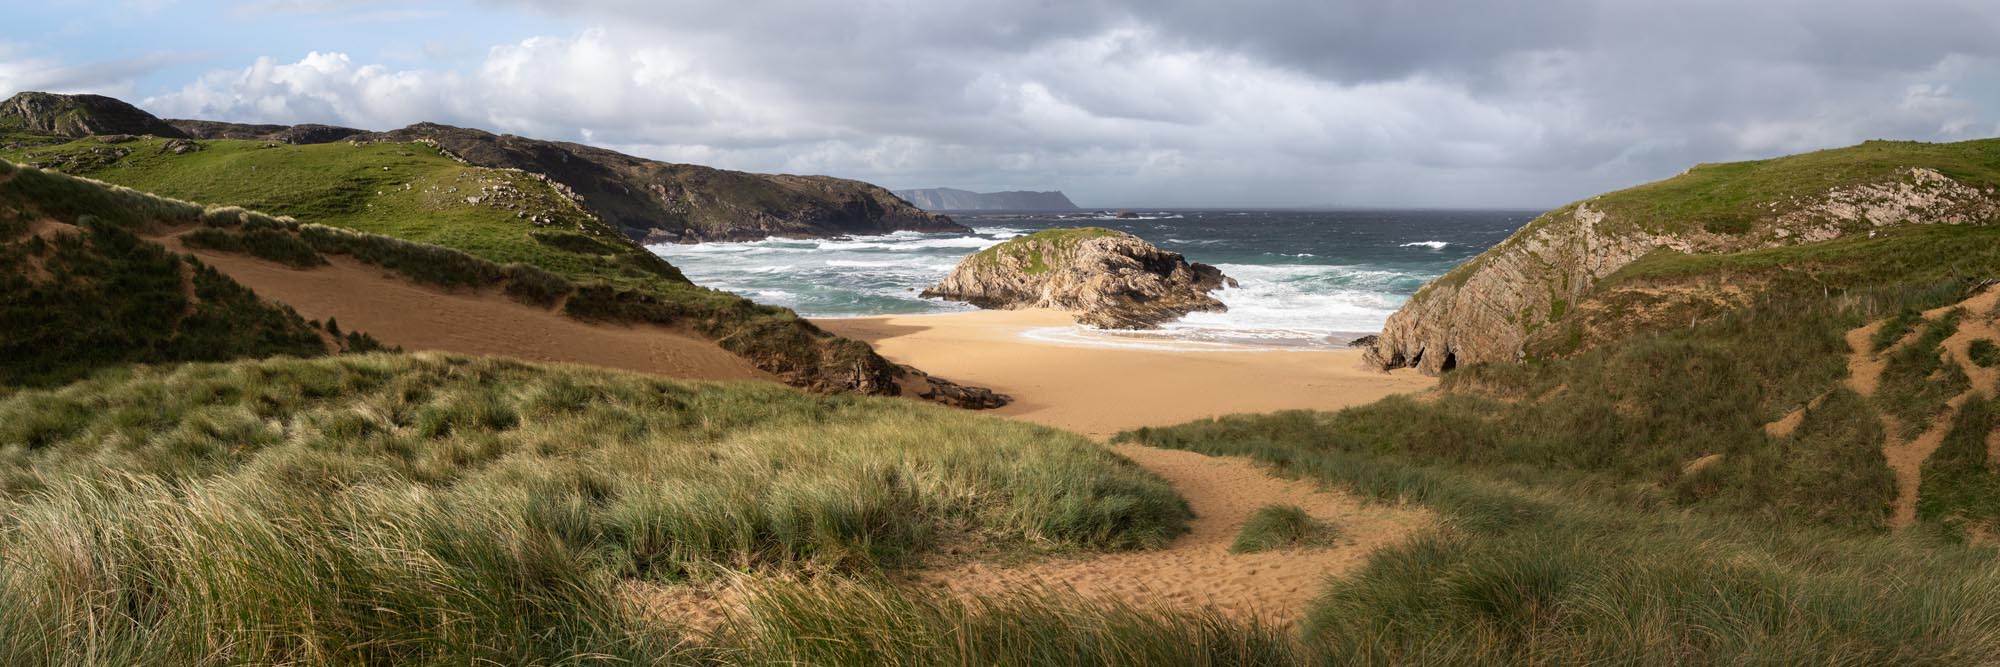 panoramic print of murder hole beach in Ireland